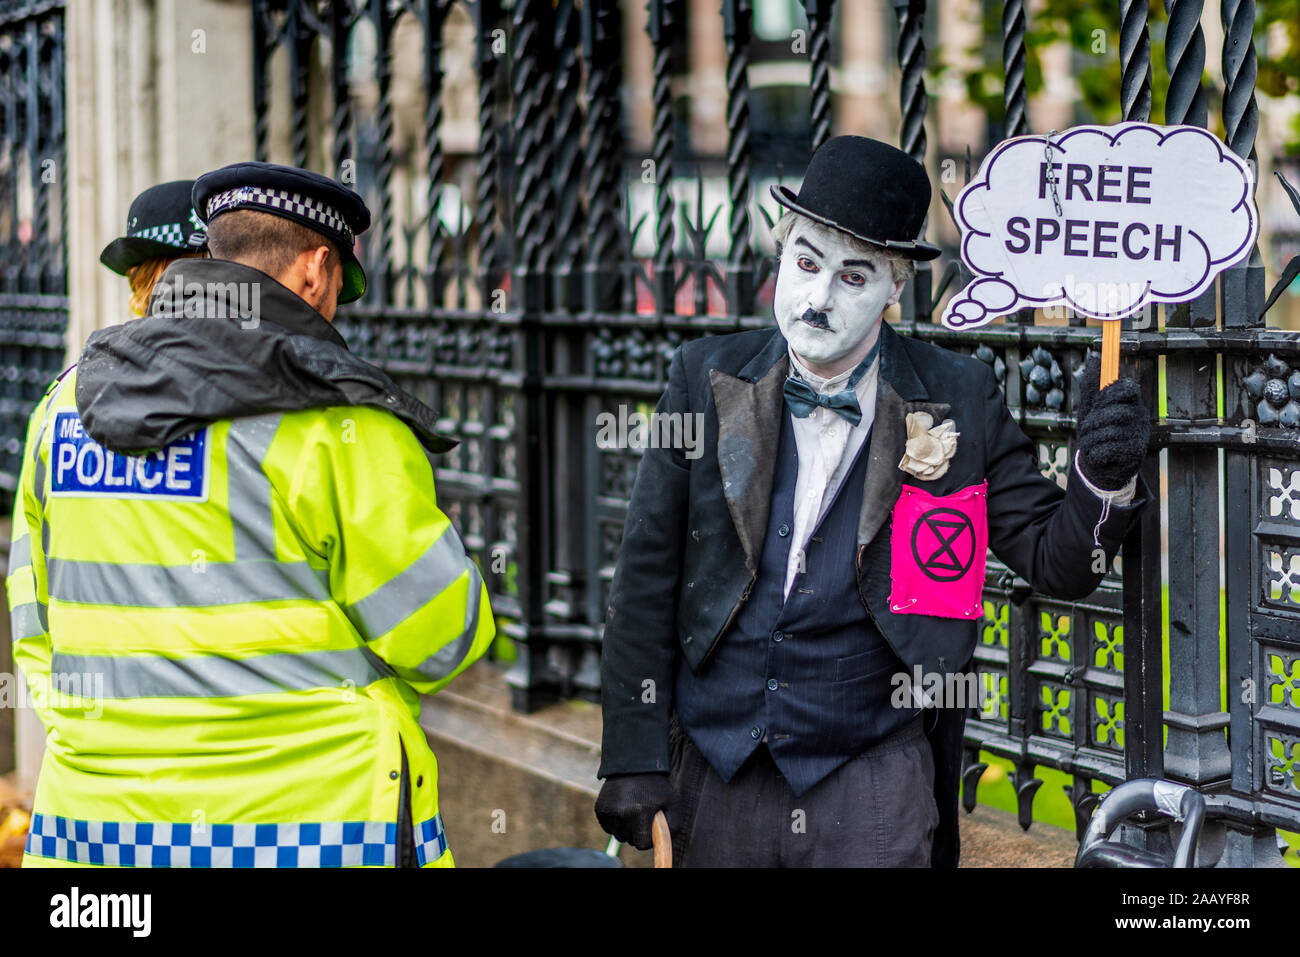 Freie Rede Parlament des Vereinigten Königreichs. Polizei Frage ein Aussterben Rebellion Demonstrant in Chaplin Art Kleidung außerhalb der Häuser des Parlaments London gekleidet. Stockfoto